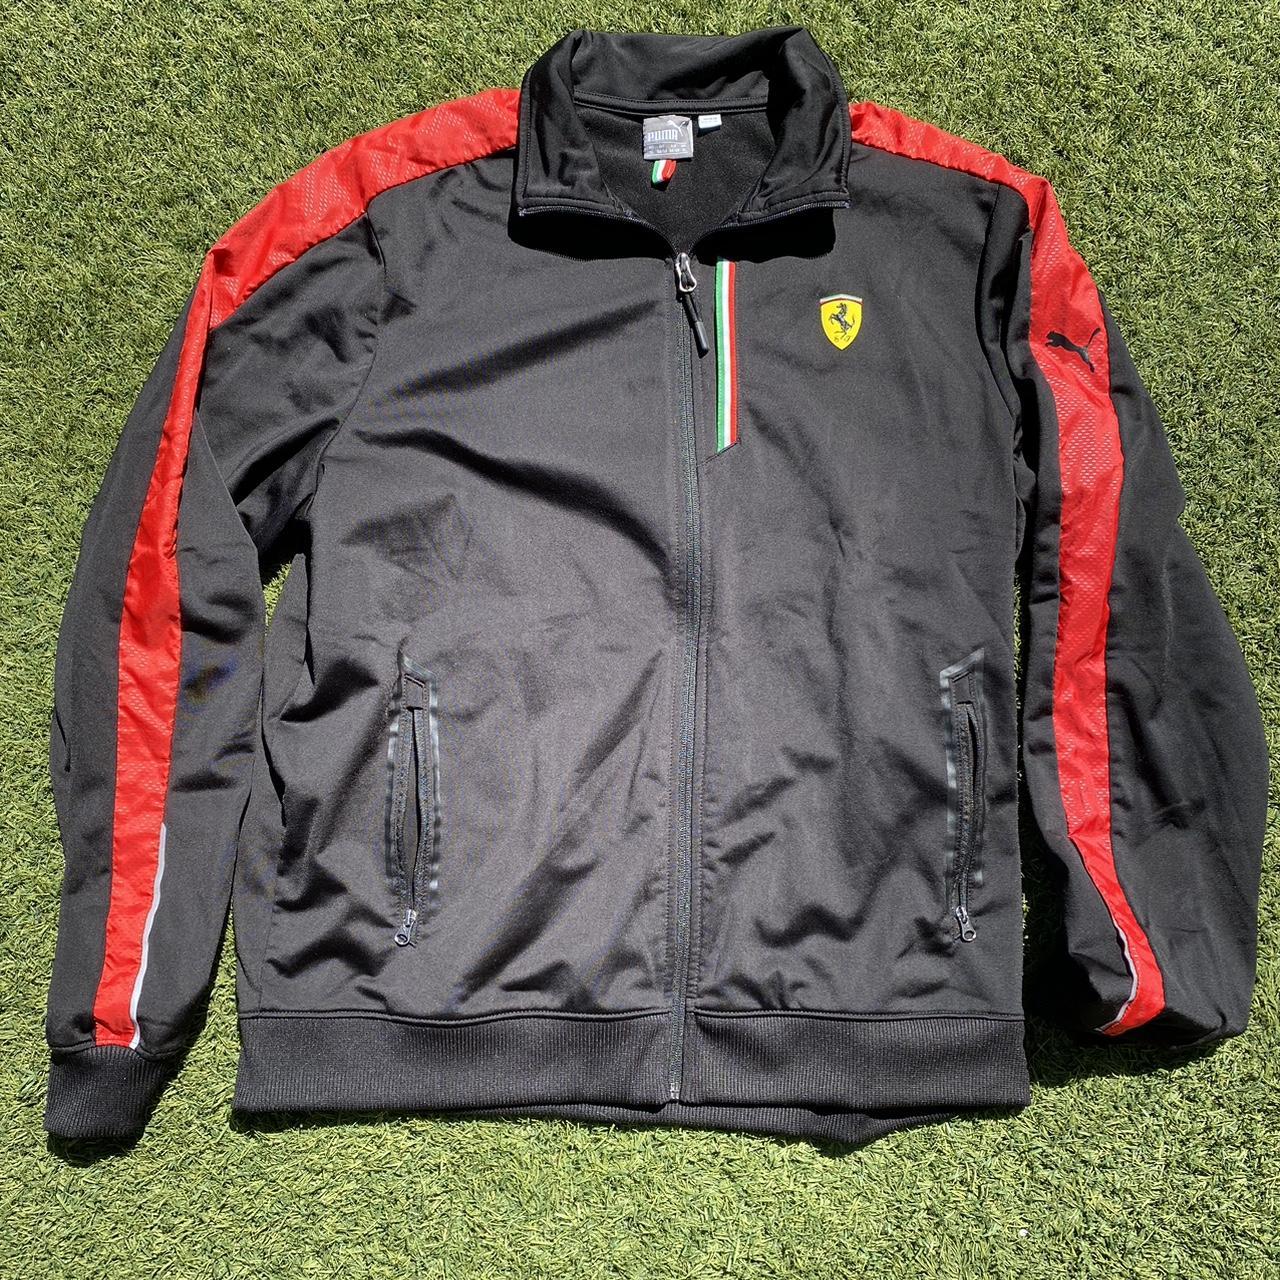 Puma Ferrari Jacket No Flaws $40 #f1 #ferrari... - Depop